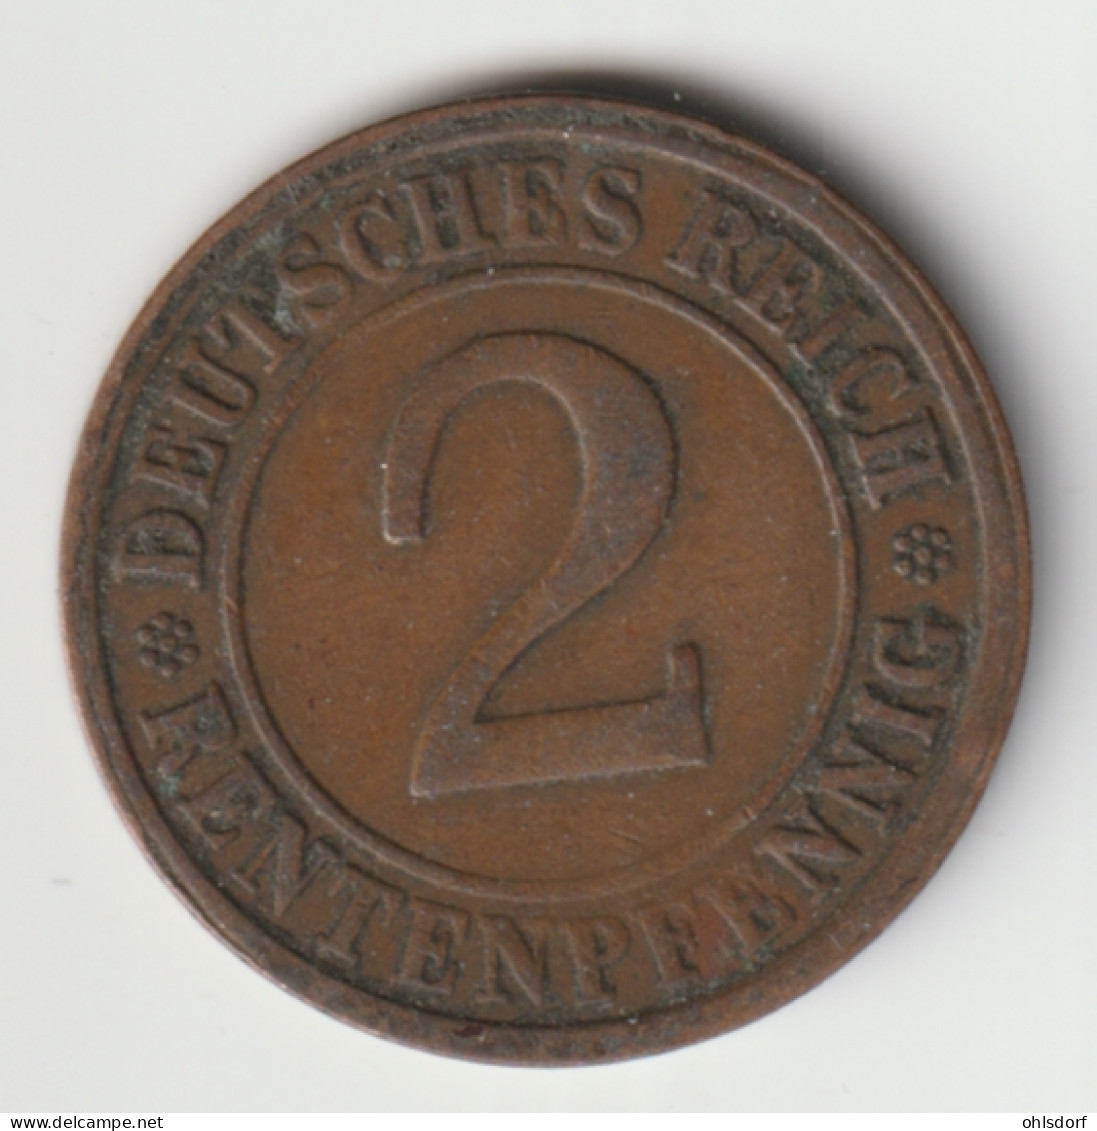 DEUTSCHES REICH 1923 G: 2 Rentenpfennig, KM 31 - 2 Rentenpfennig & 2 Reichspfennig